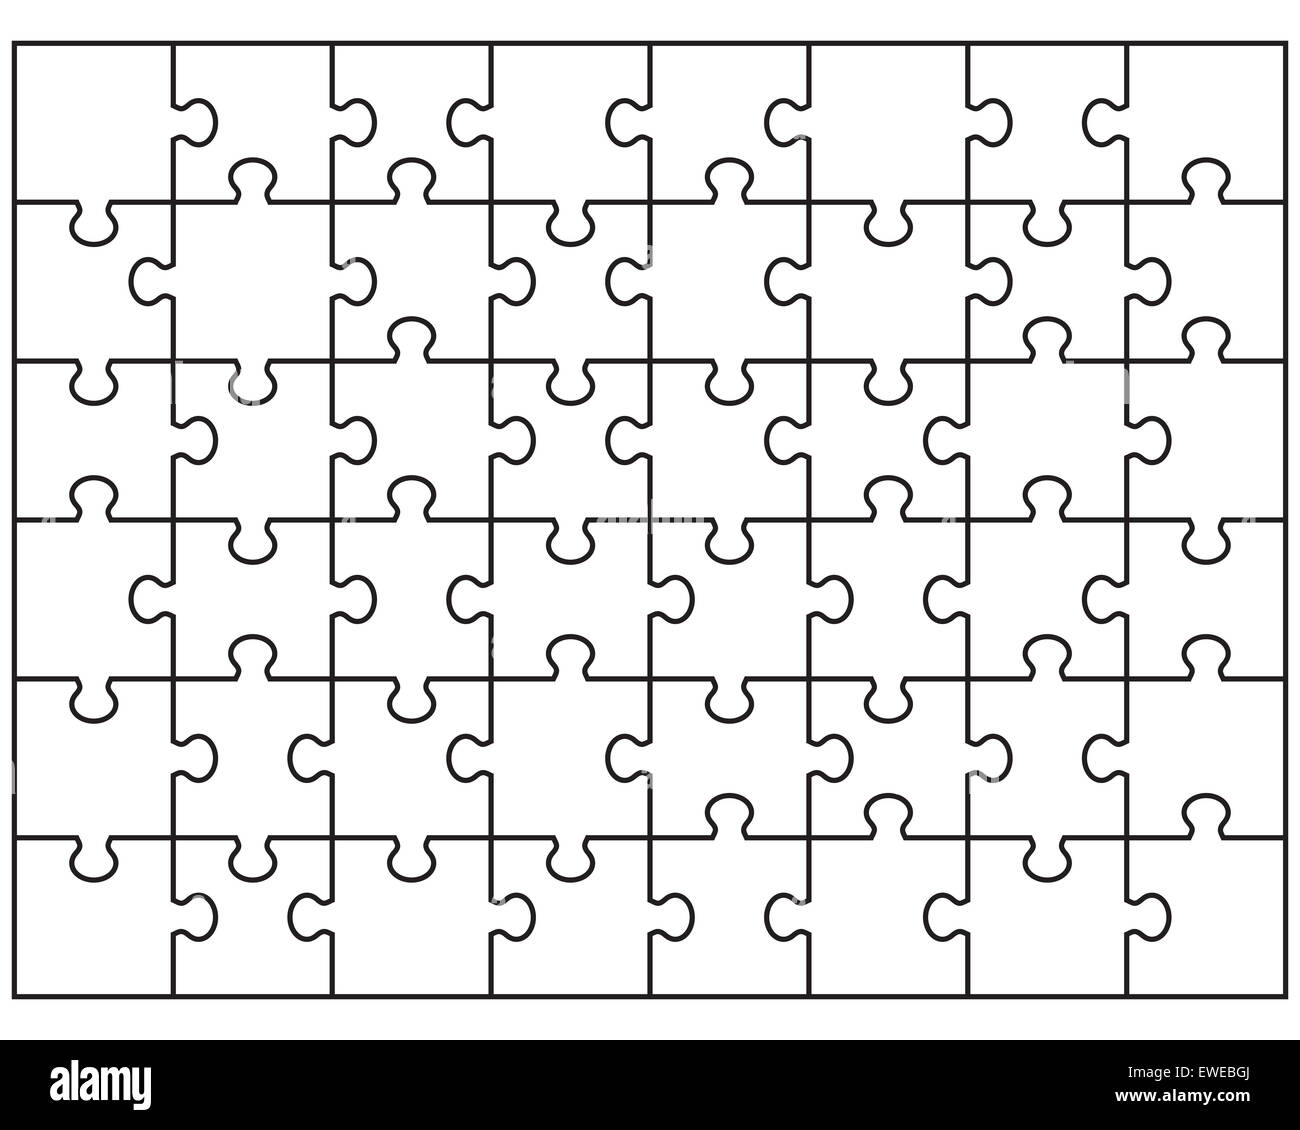 Rompecabezas de mosaico Imágenes de stock en blanco y negro - Alamy